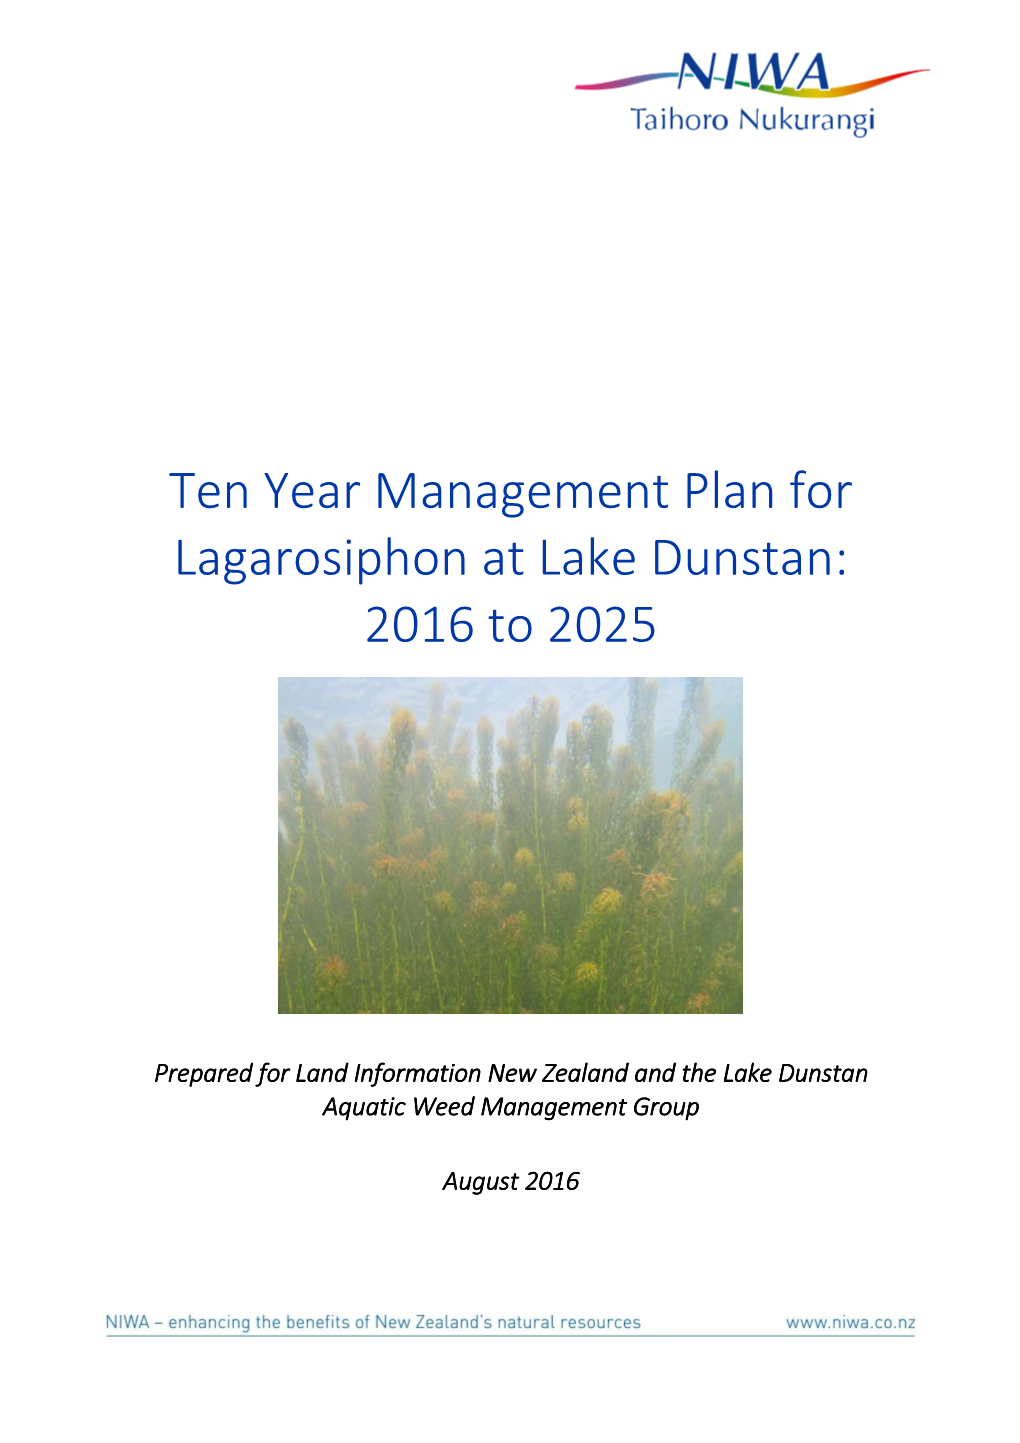 Ten Year Management Plan for Lagarosiphon at Lake Dunstan: 2016 to 2025